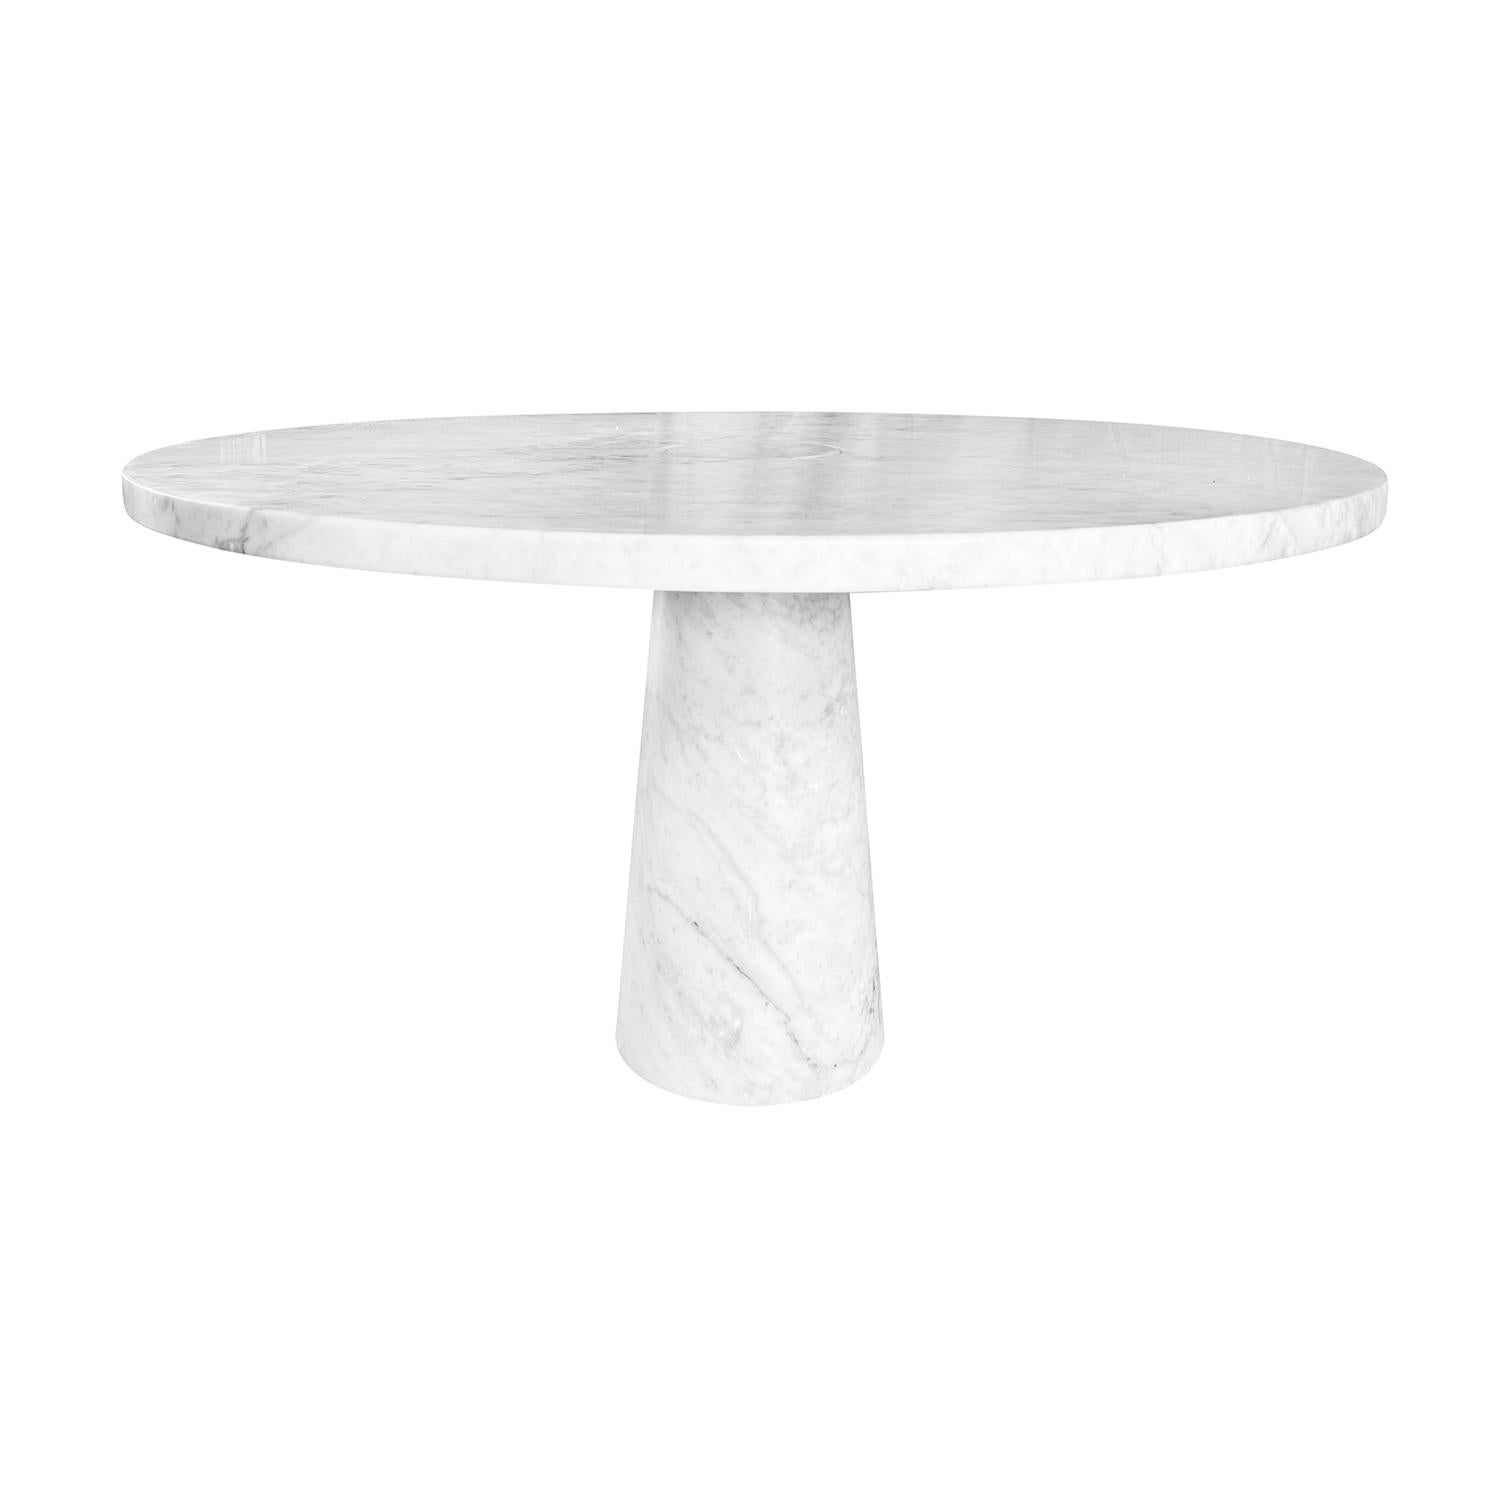 Ein italienischer Esszimmertisch aus der Mitte des Jahrhunderts, handgefertigt aus weißem Carrara-Marmor Arabescato, entworfen von Angelo Mangiarotti und hergestellt von Skipper, in gutem Zustand. Die große runde Platte des Tisches der Serie Eros